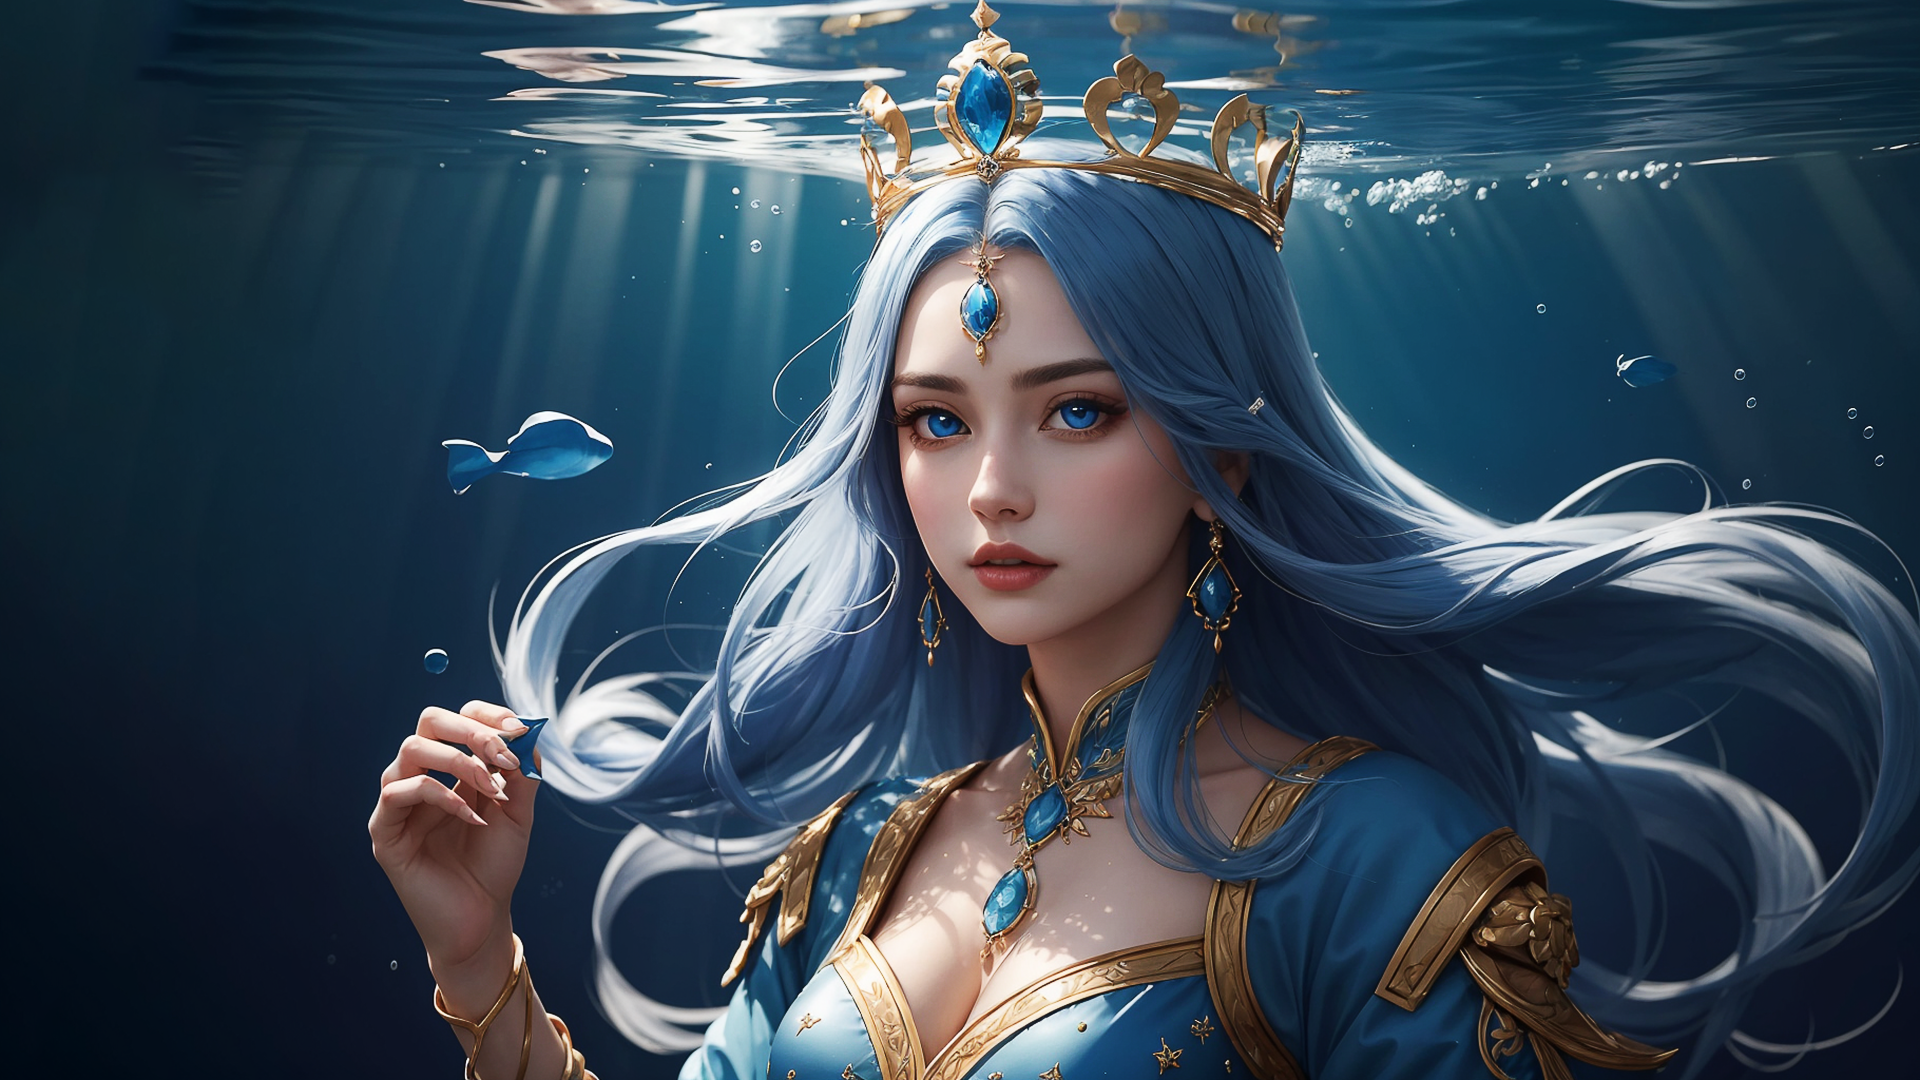 General 1920x1080 AI art women CGI blue hair underwater blue digital art water long hair blue eyes looking at viewer earring crown sunlight cleavage Asian